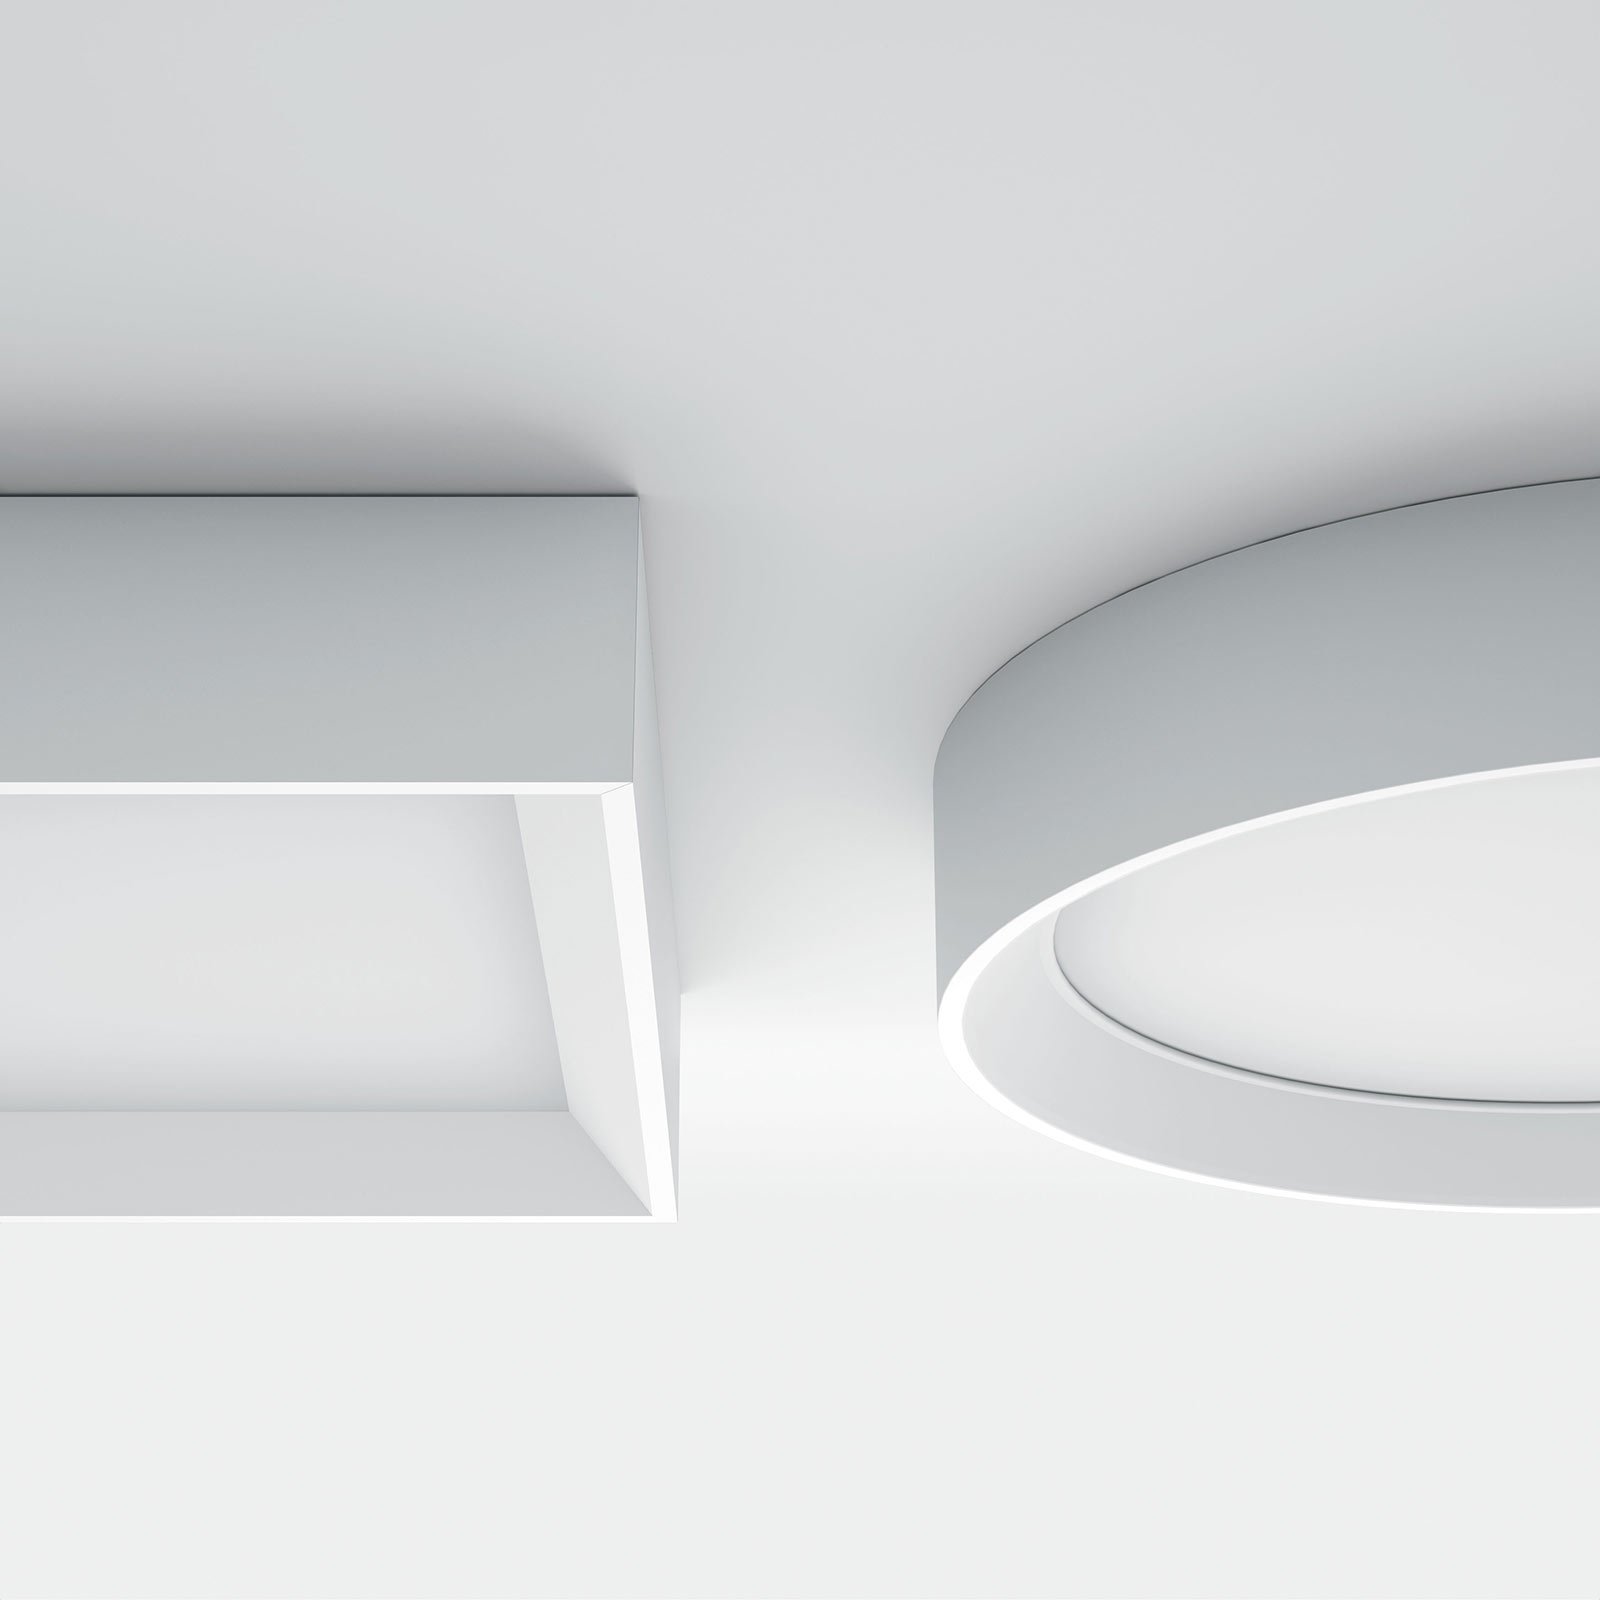 LED осветление за таван Tara R, кръгло, Ø 51 cm